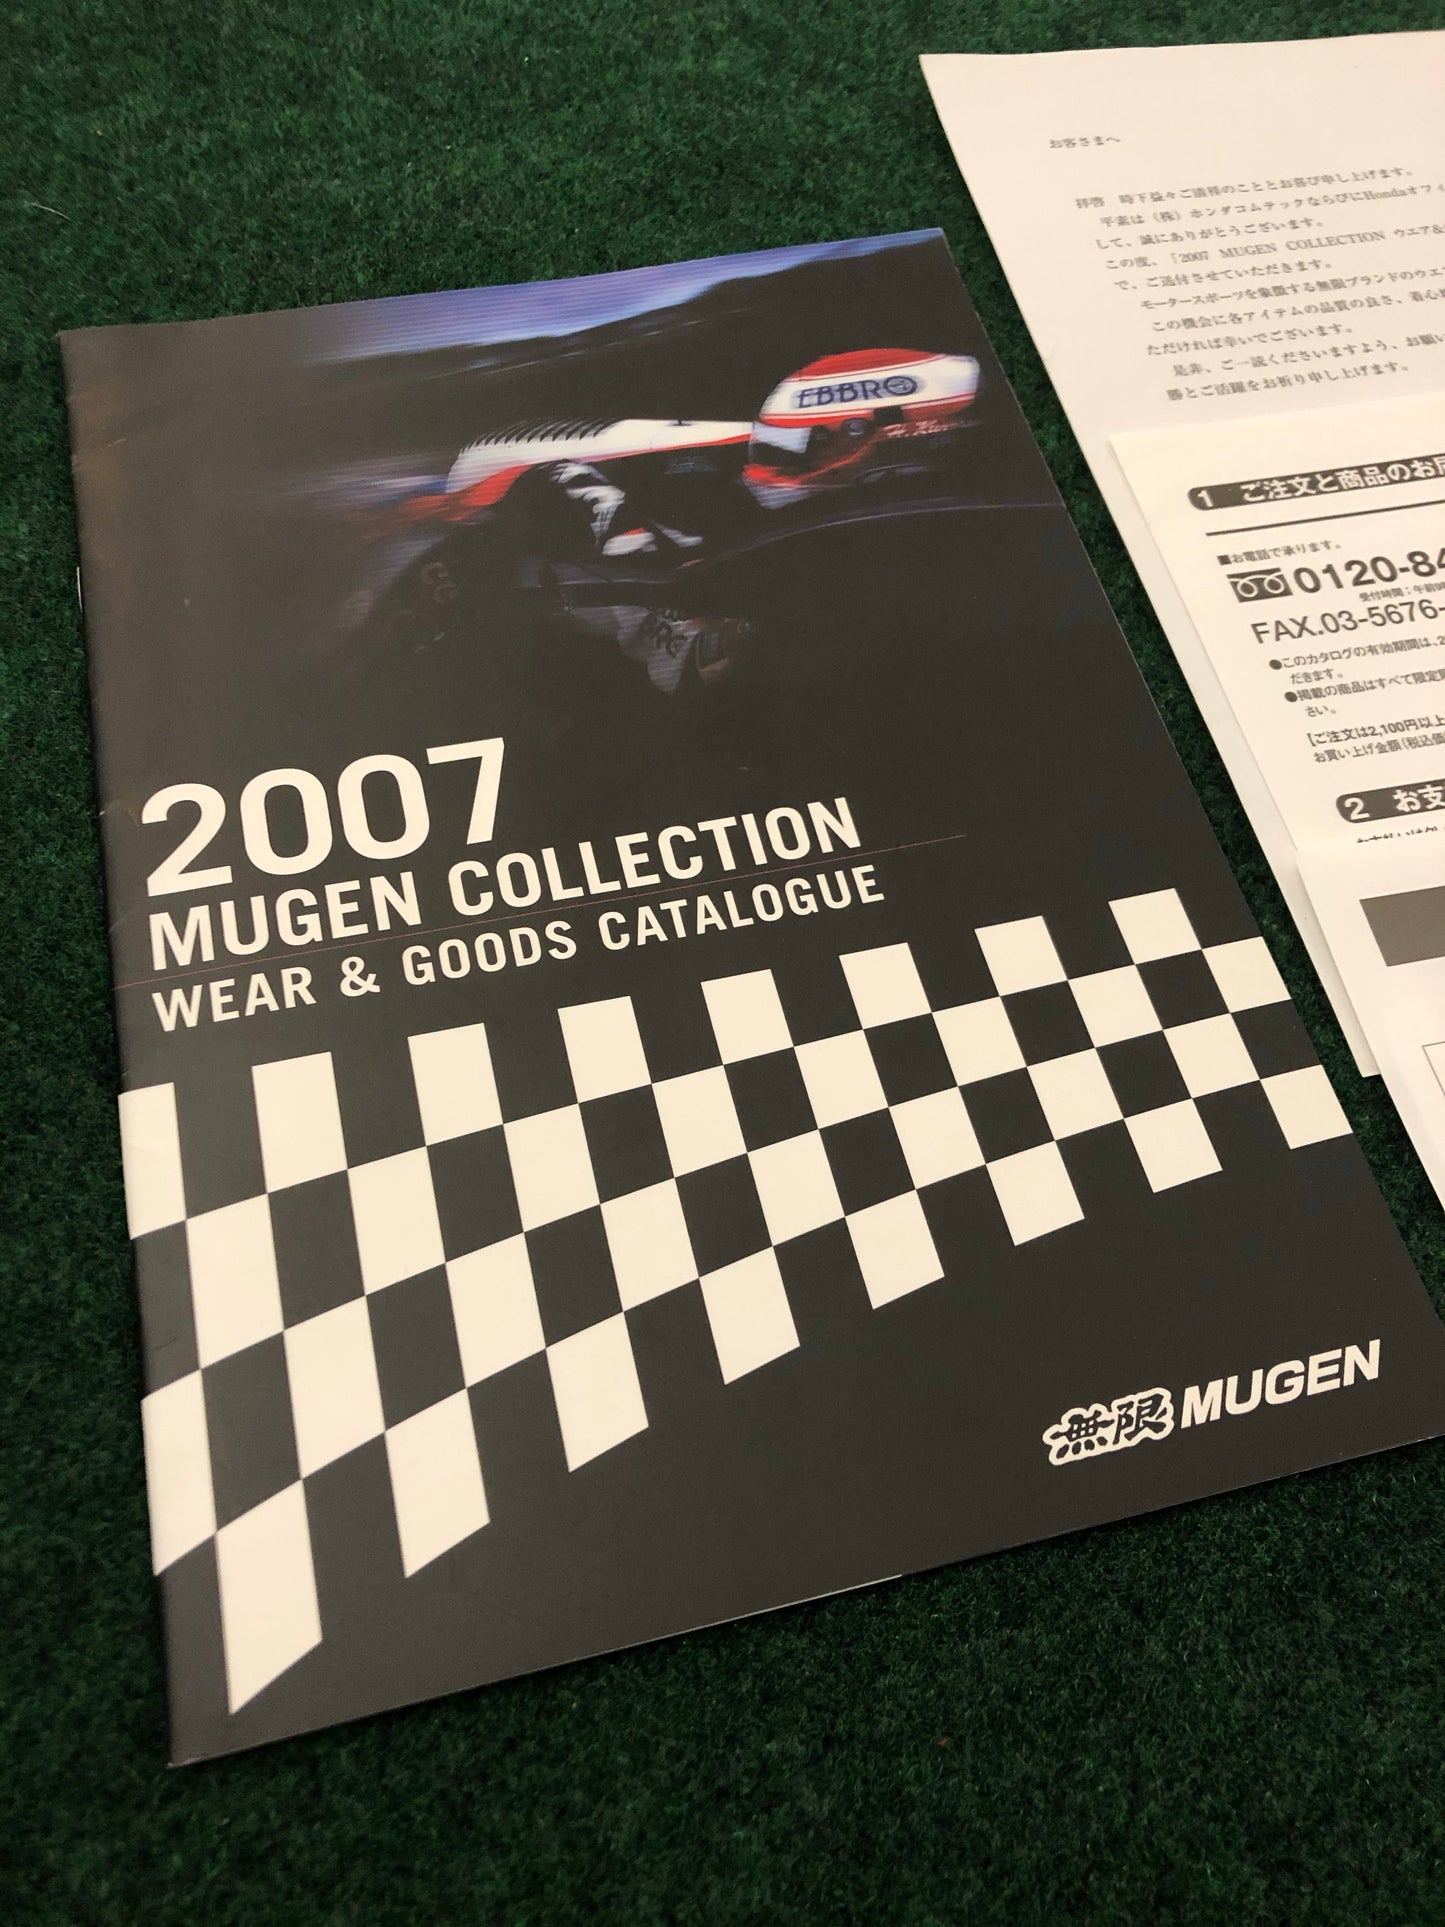 MUGEN - 2007 Wear & Goods Catalog